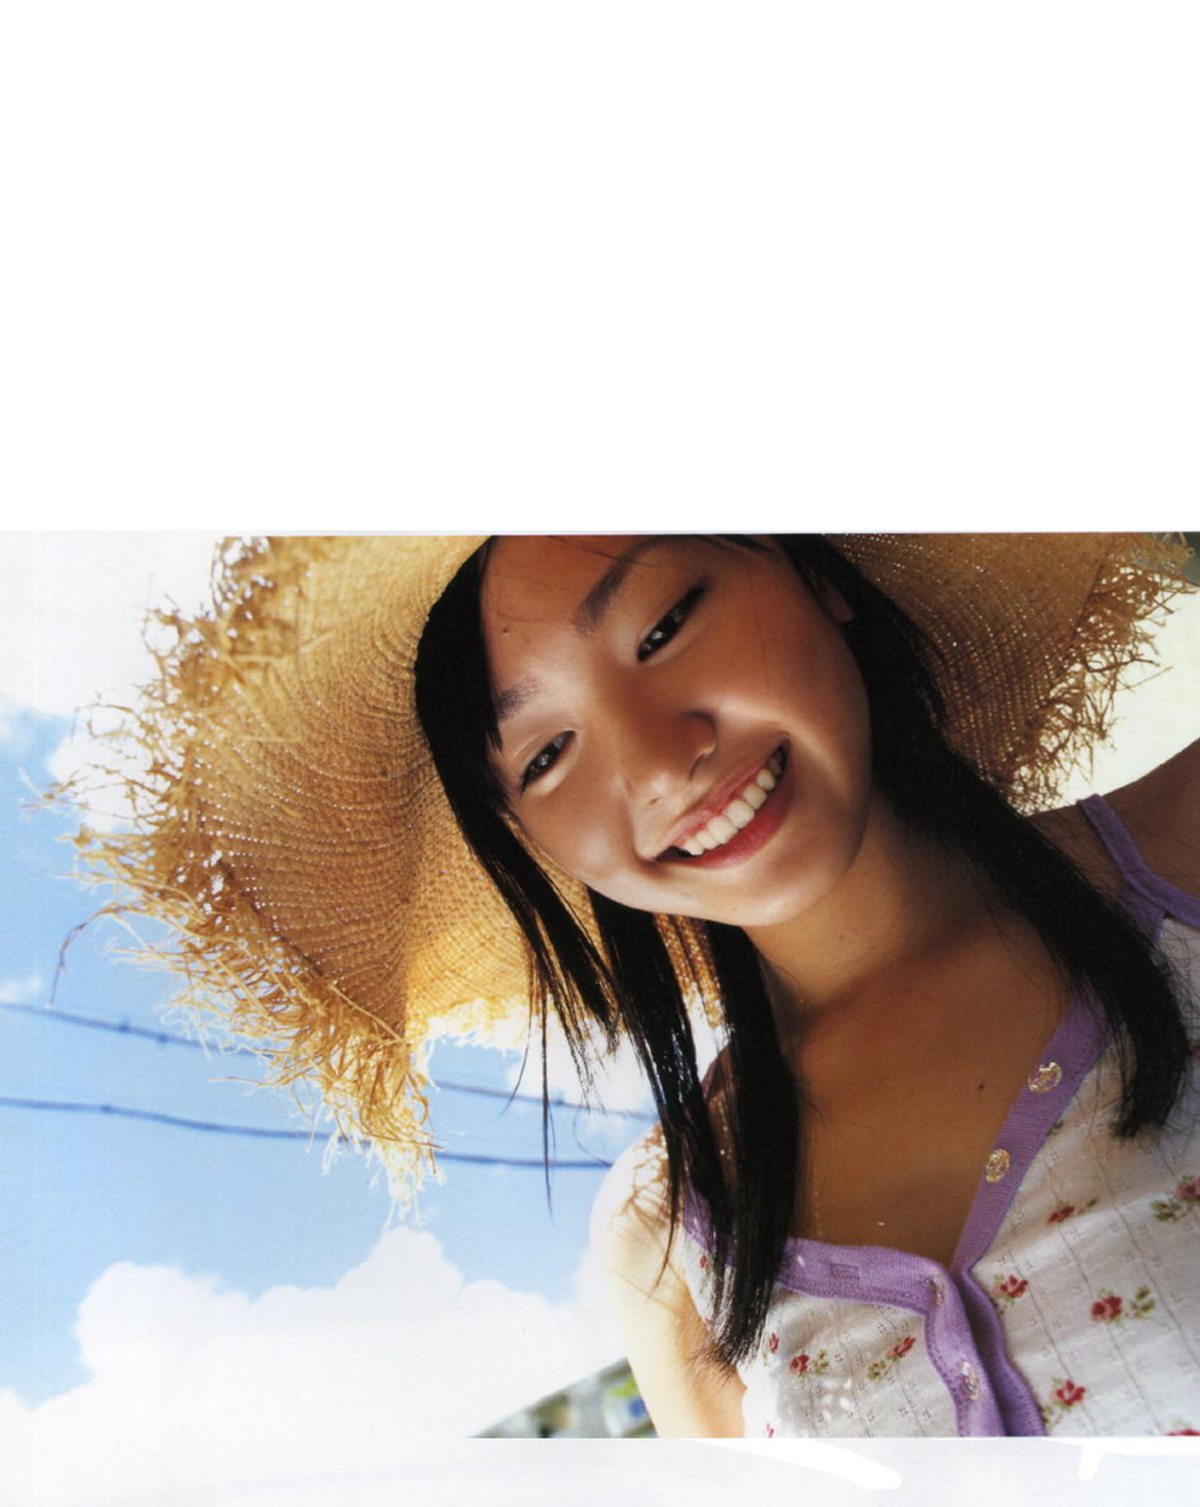 Photobook Yui Aragaki 新垣結衣 Chura Chura ちゅら ちゅら 2006 03 03 0048 7623380249.jpg